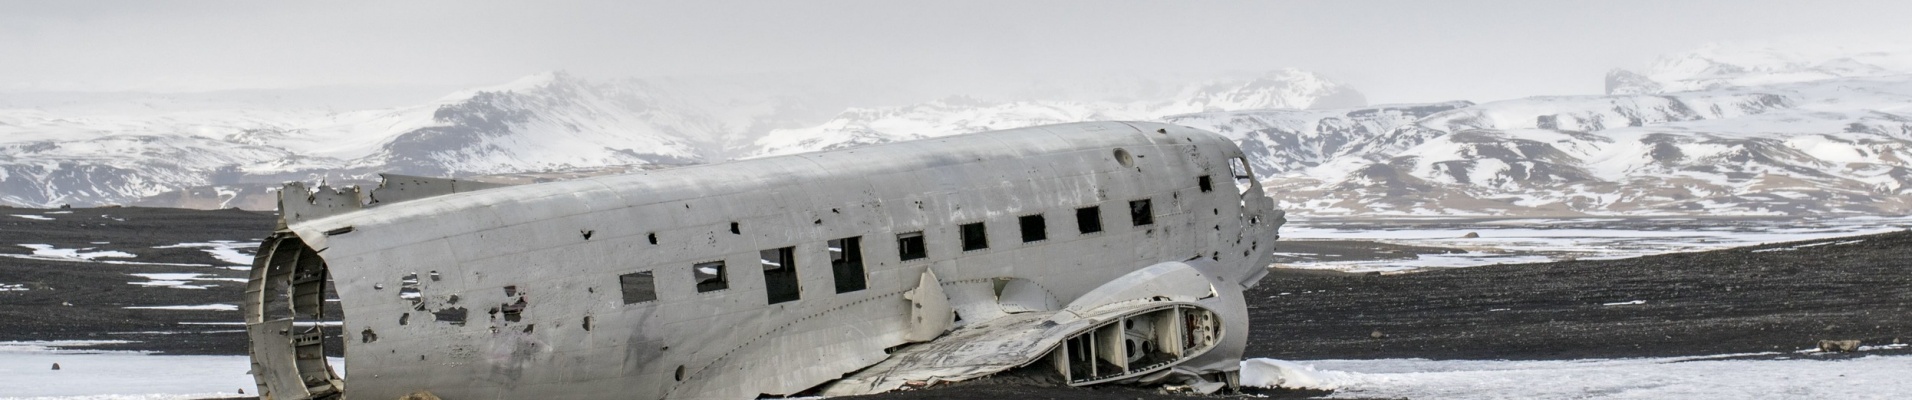 Avion échoué Islande